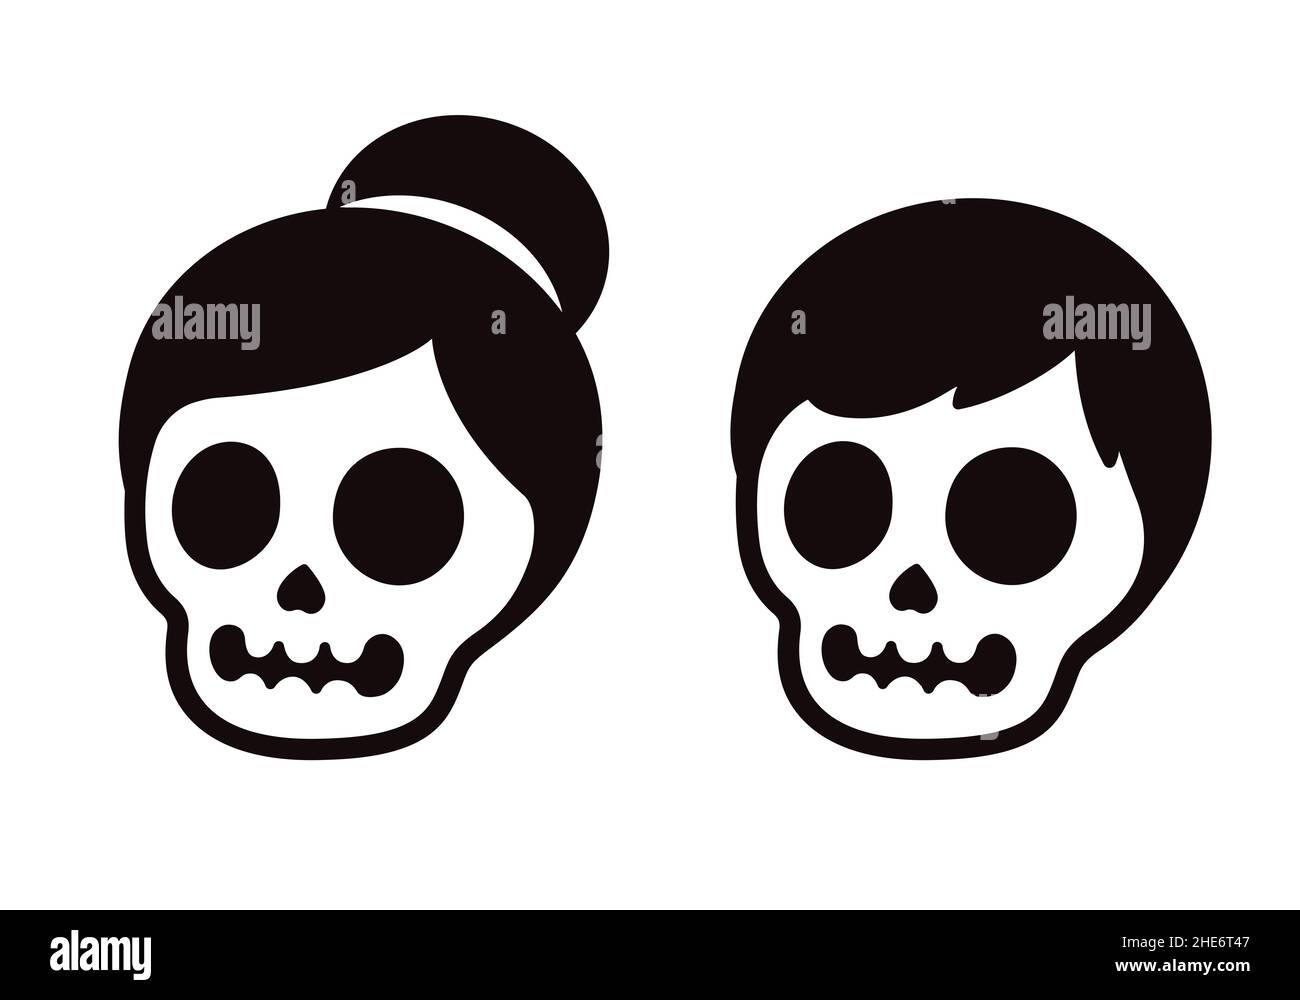 Coppia cranio cartoon, maschio e femmina. Due teschi umani con capelli. Semplice icona o logo in bianco e nero, immagine grafica vettoriale di clip. Illustrazione Vettoriale